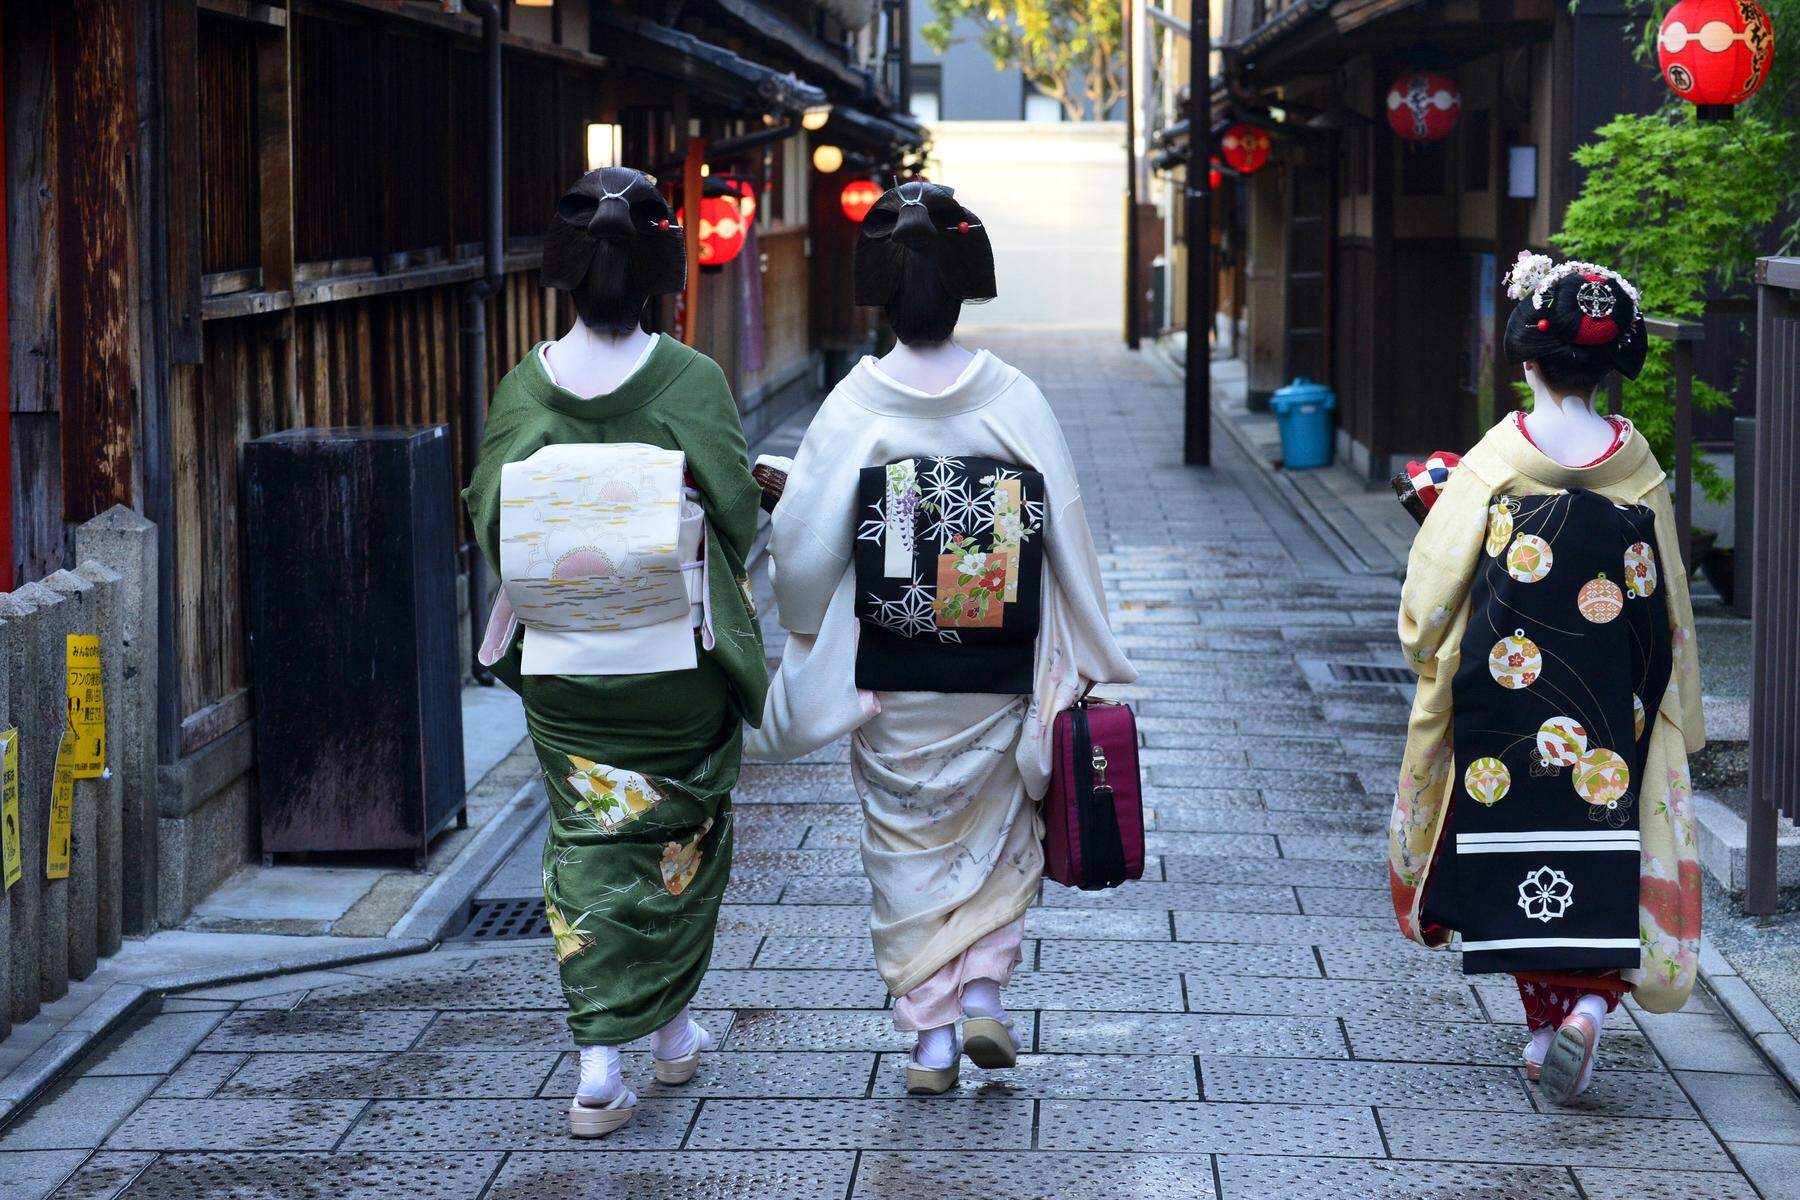 Wegen rüpelhafter Touristen: Kyoto beschränkt Zugang zu Geisha-Bezirk